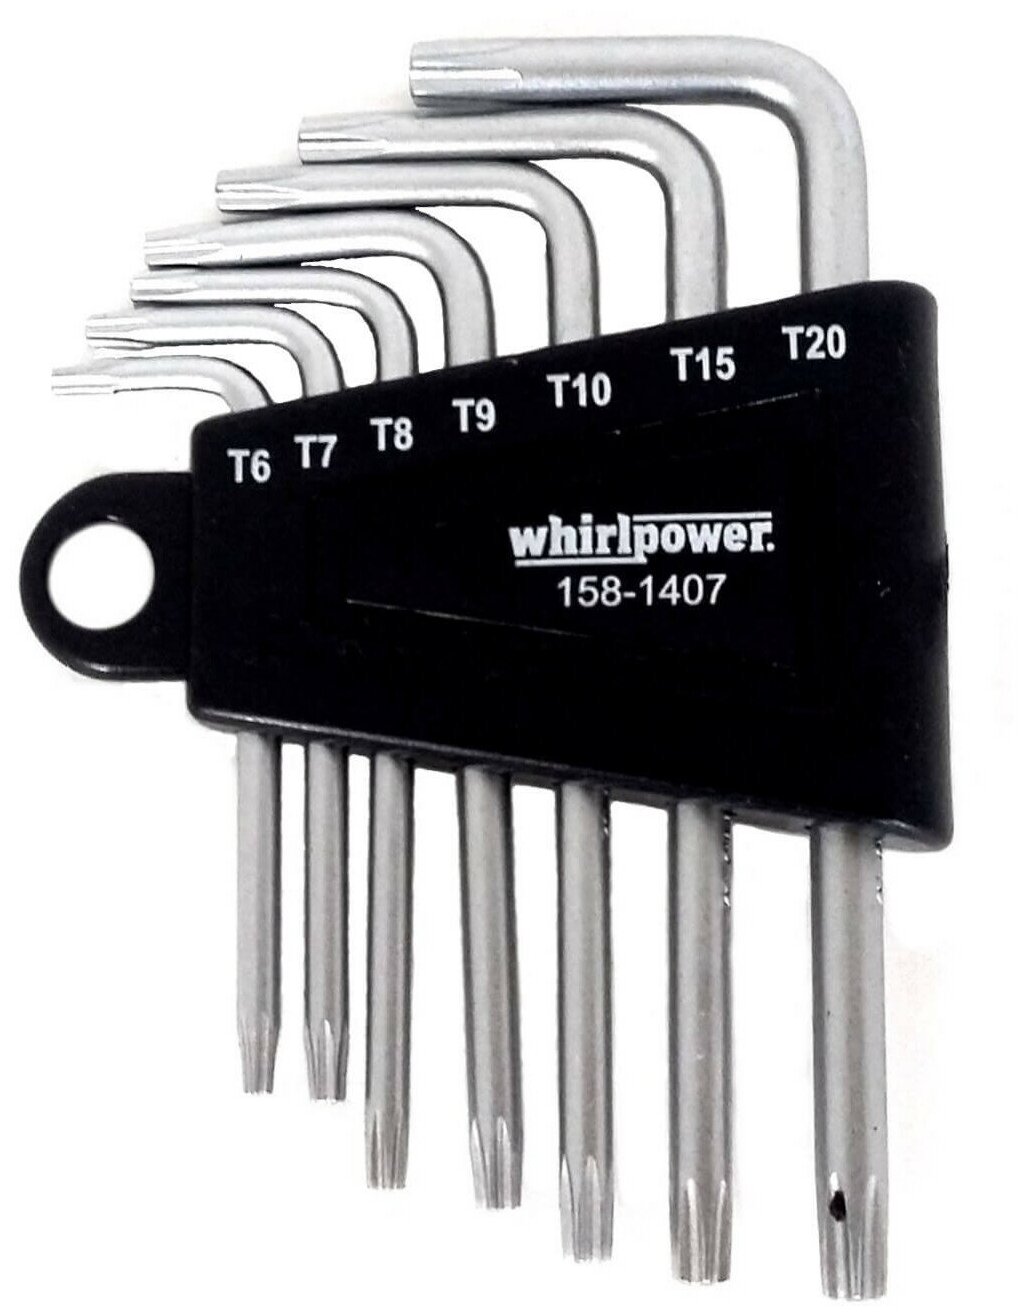 Набор ключей WhirlPower TORX Г-образных 7 штук 158-1407